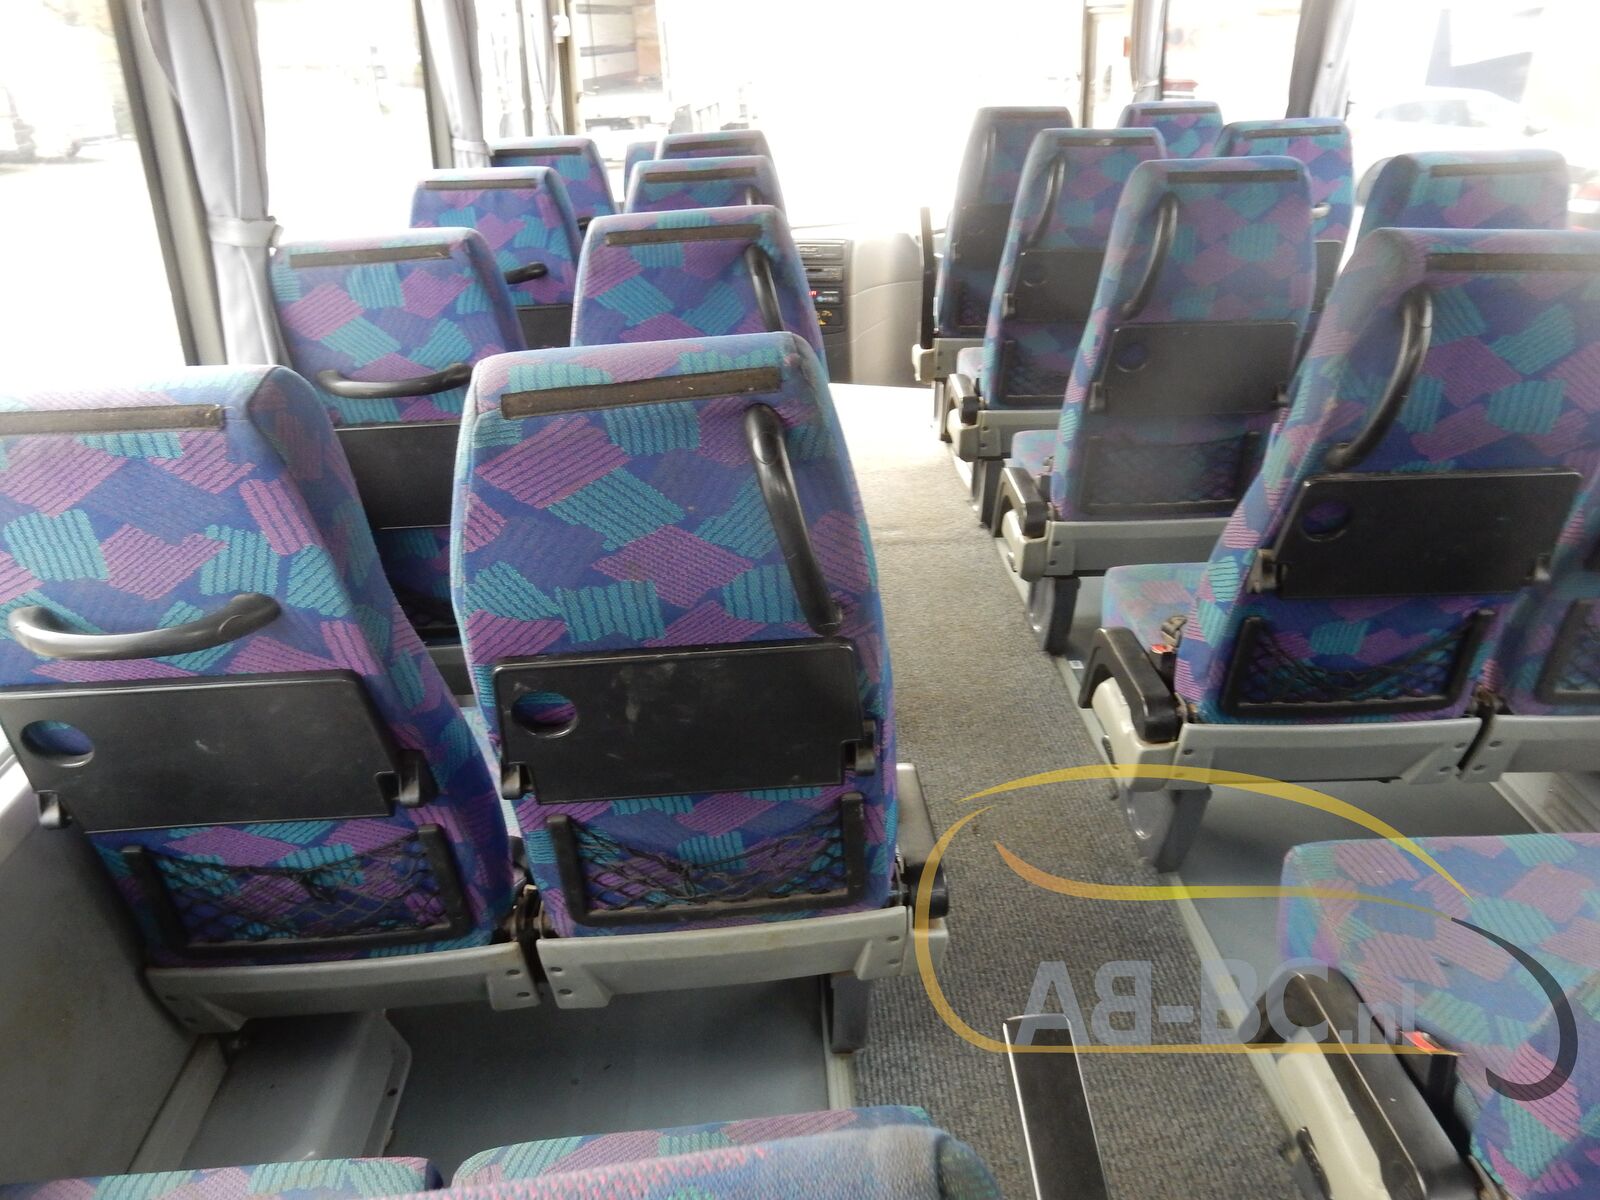 coach-bus-OTOKAR-Navigo-28-Seats---1636639455321350788_orig_abd3eca38618011398e526c7d78351ff--21111115533115941900